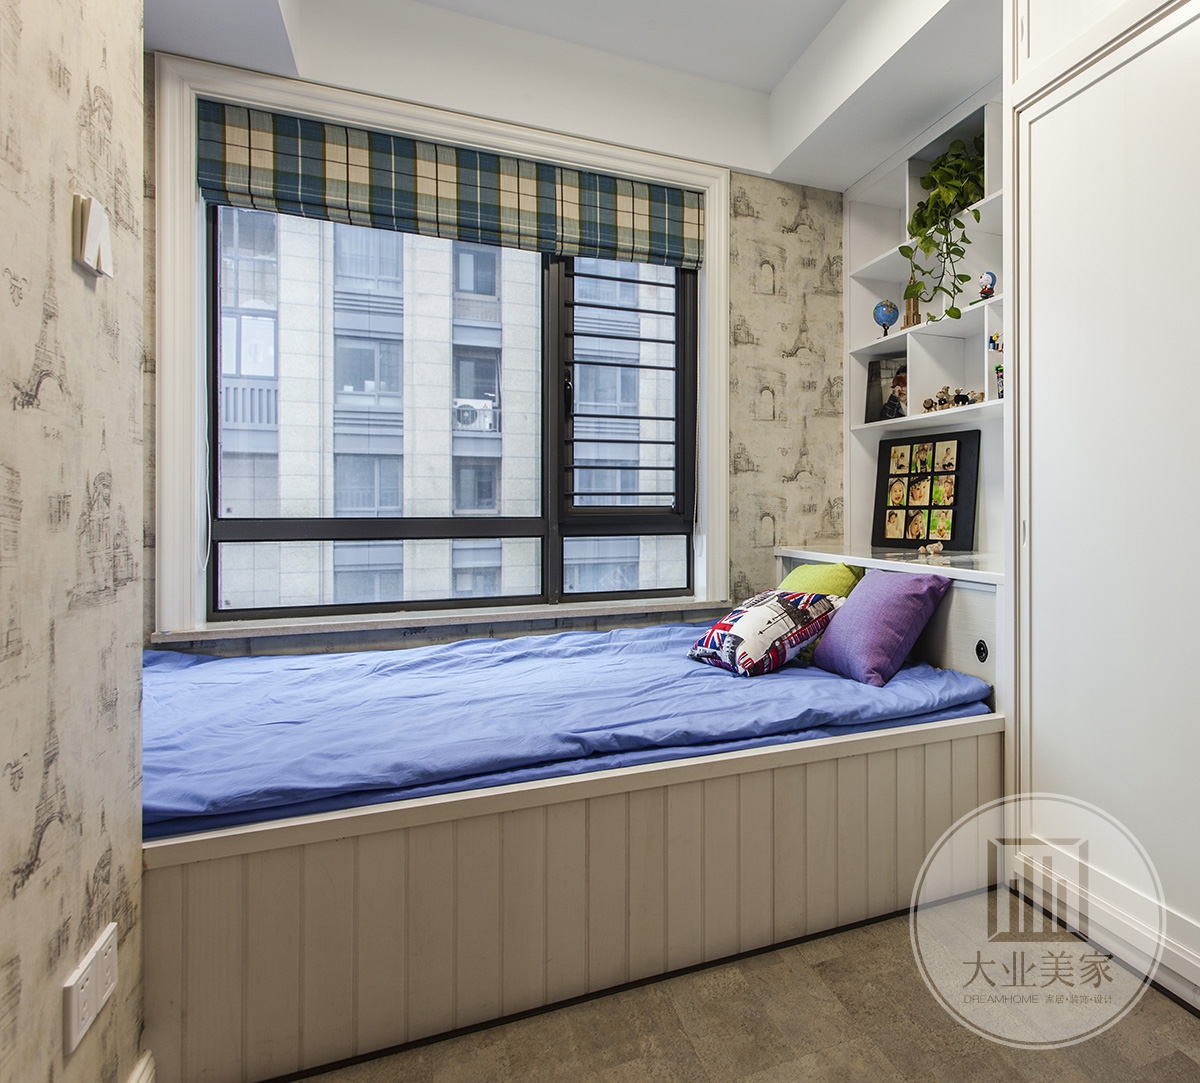 客房效果图：客房布置简洁实用，色彩采用白色为主，床用塌塌米设计手法，墙面清新的色调令人感到清爽。